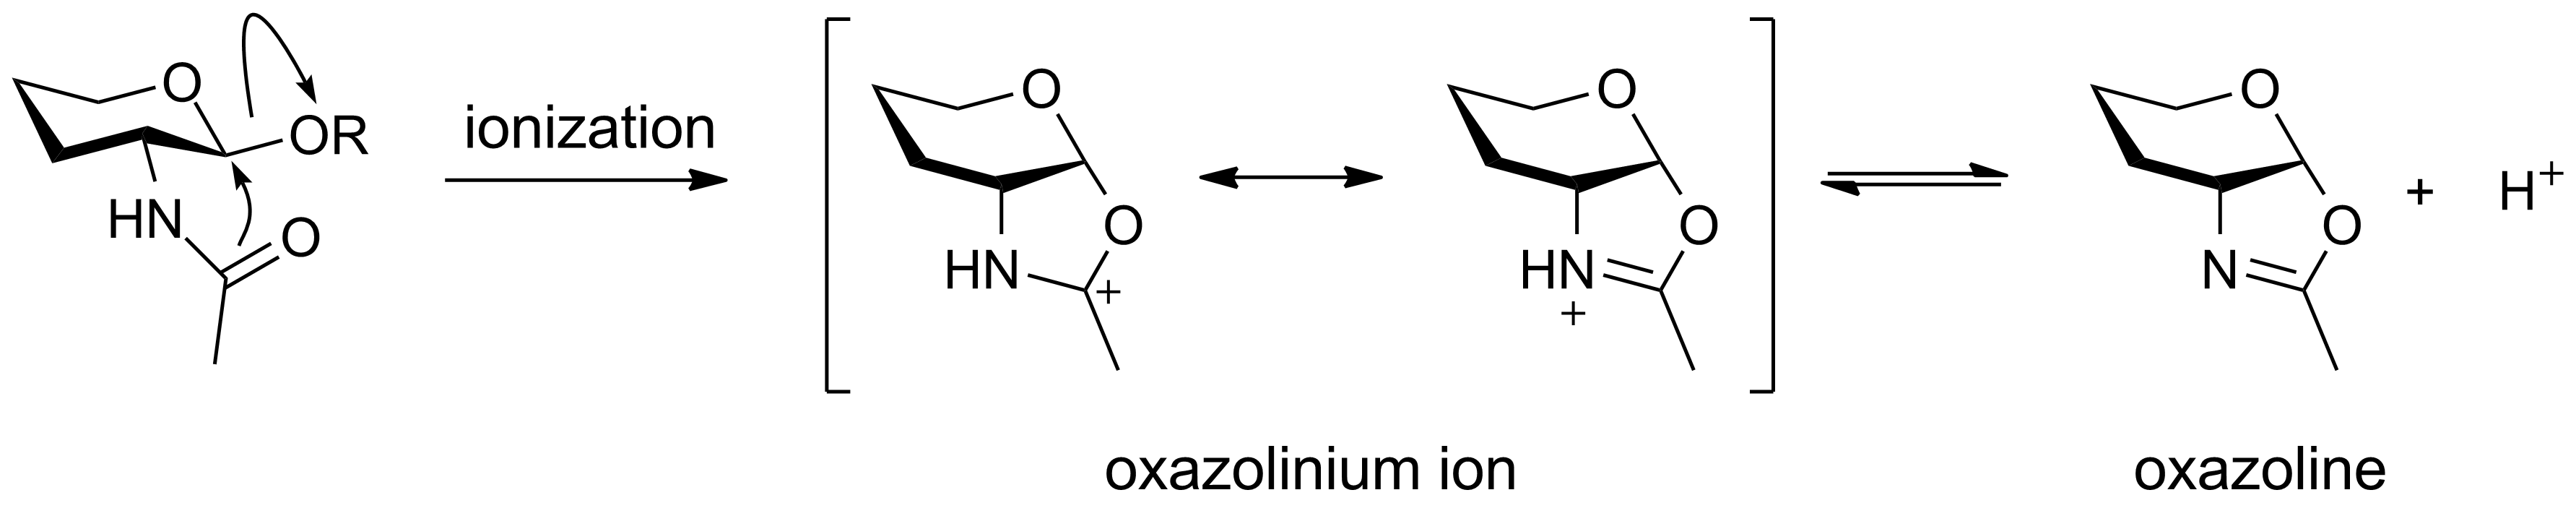 Oxazolinium ion.png